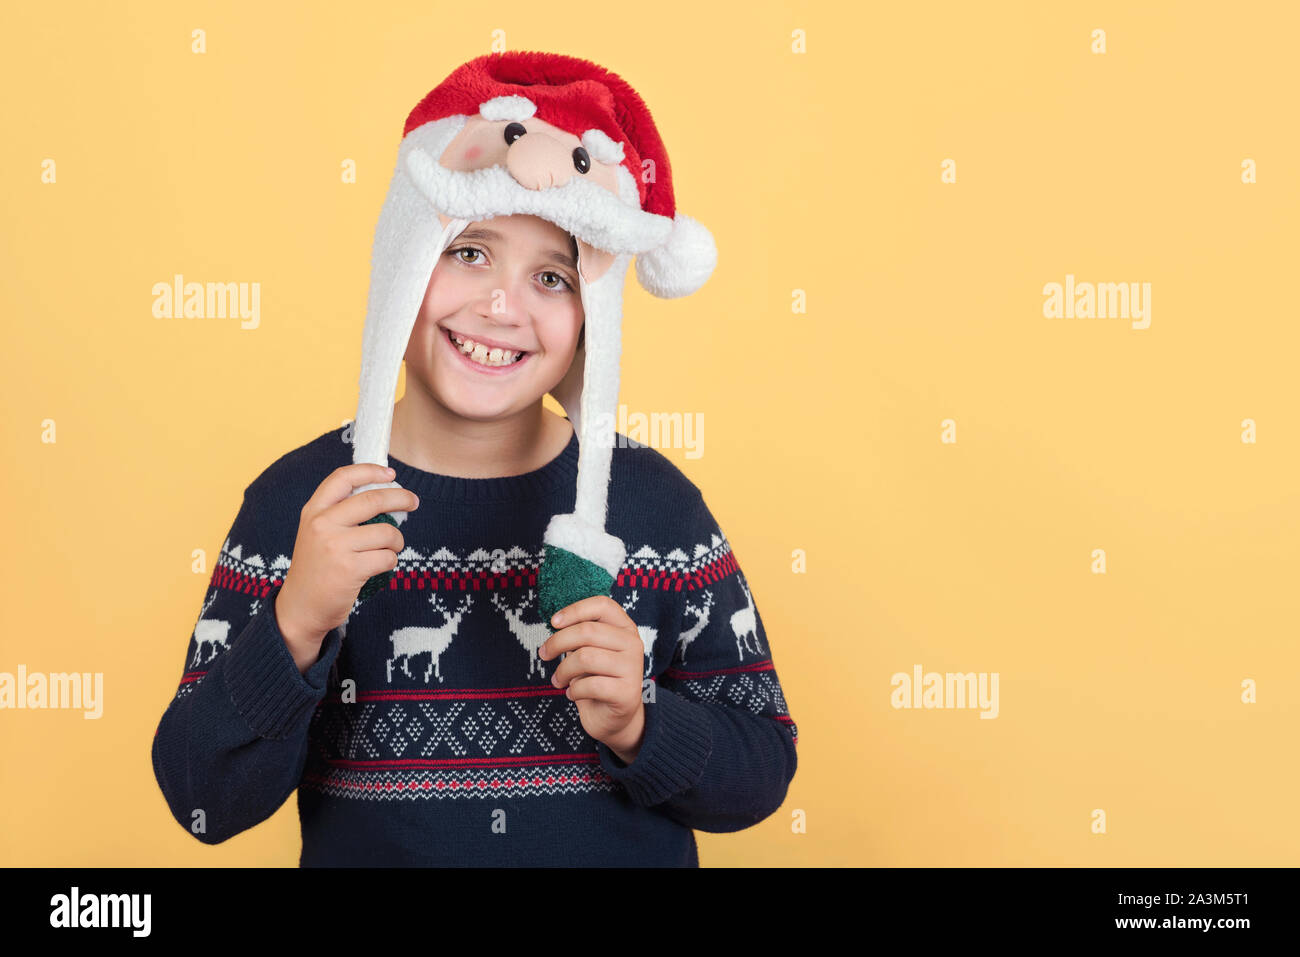 Smiling Child Wearing Christmas Santa Claus Hat sur fond jaune Banque D'Images